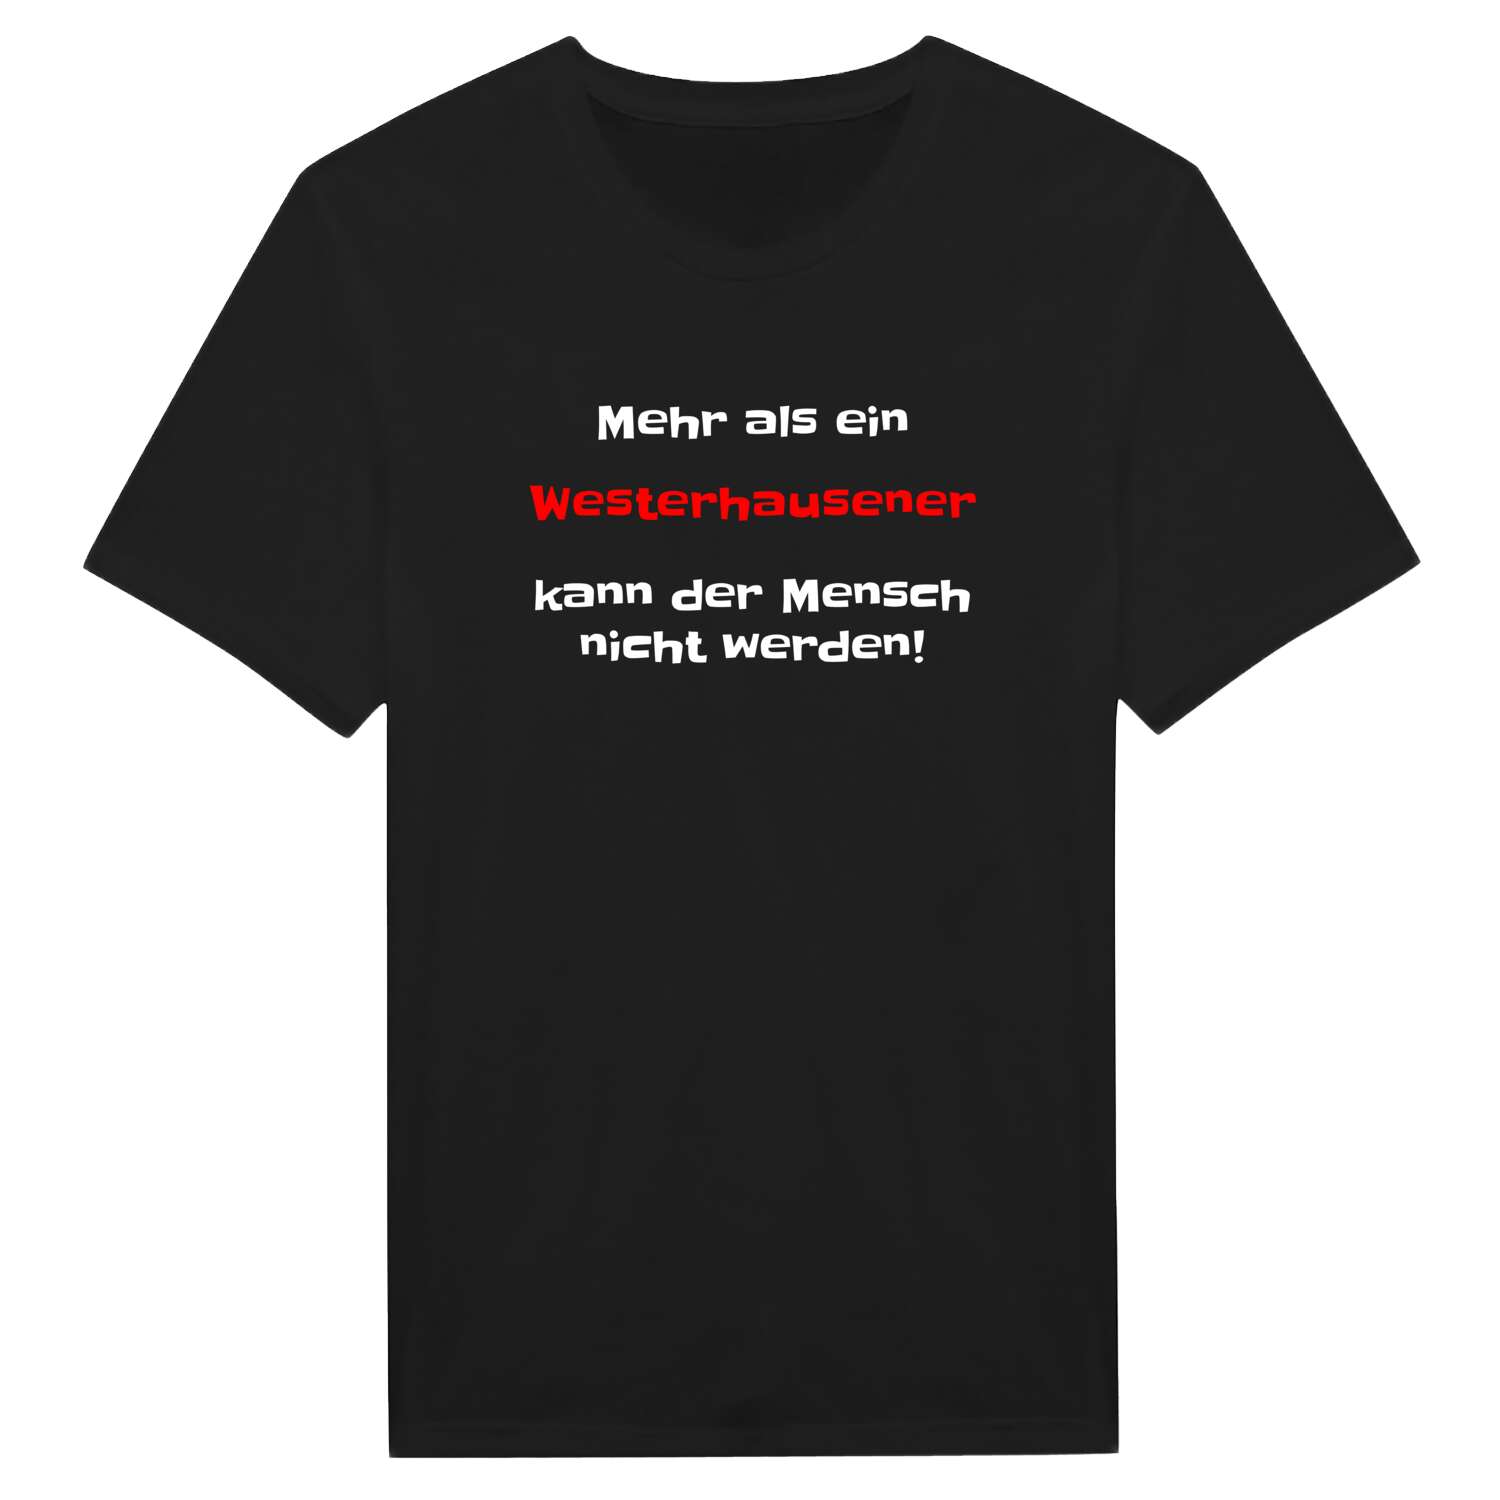 Westerhausen T-Shirt »Mehr als ein«